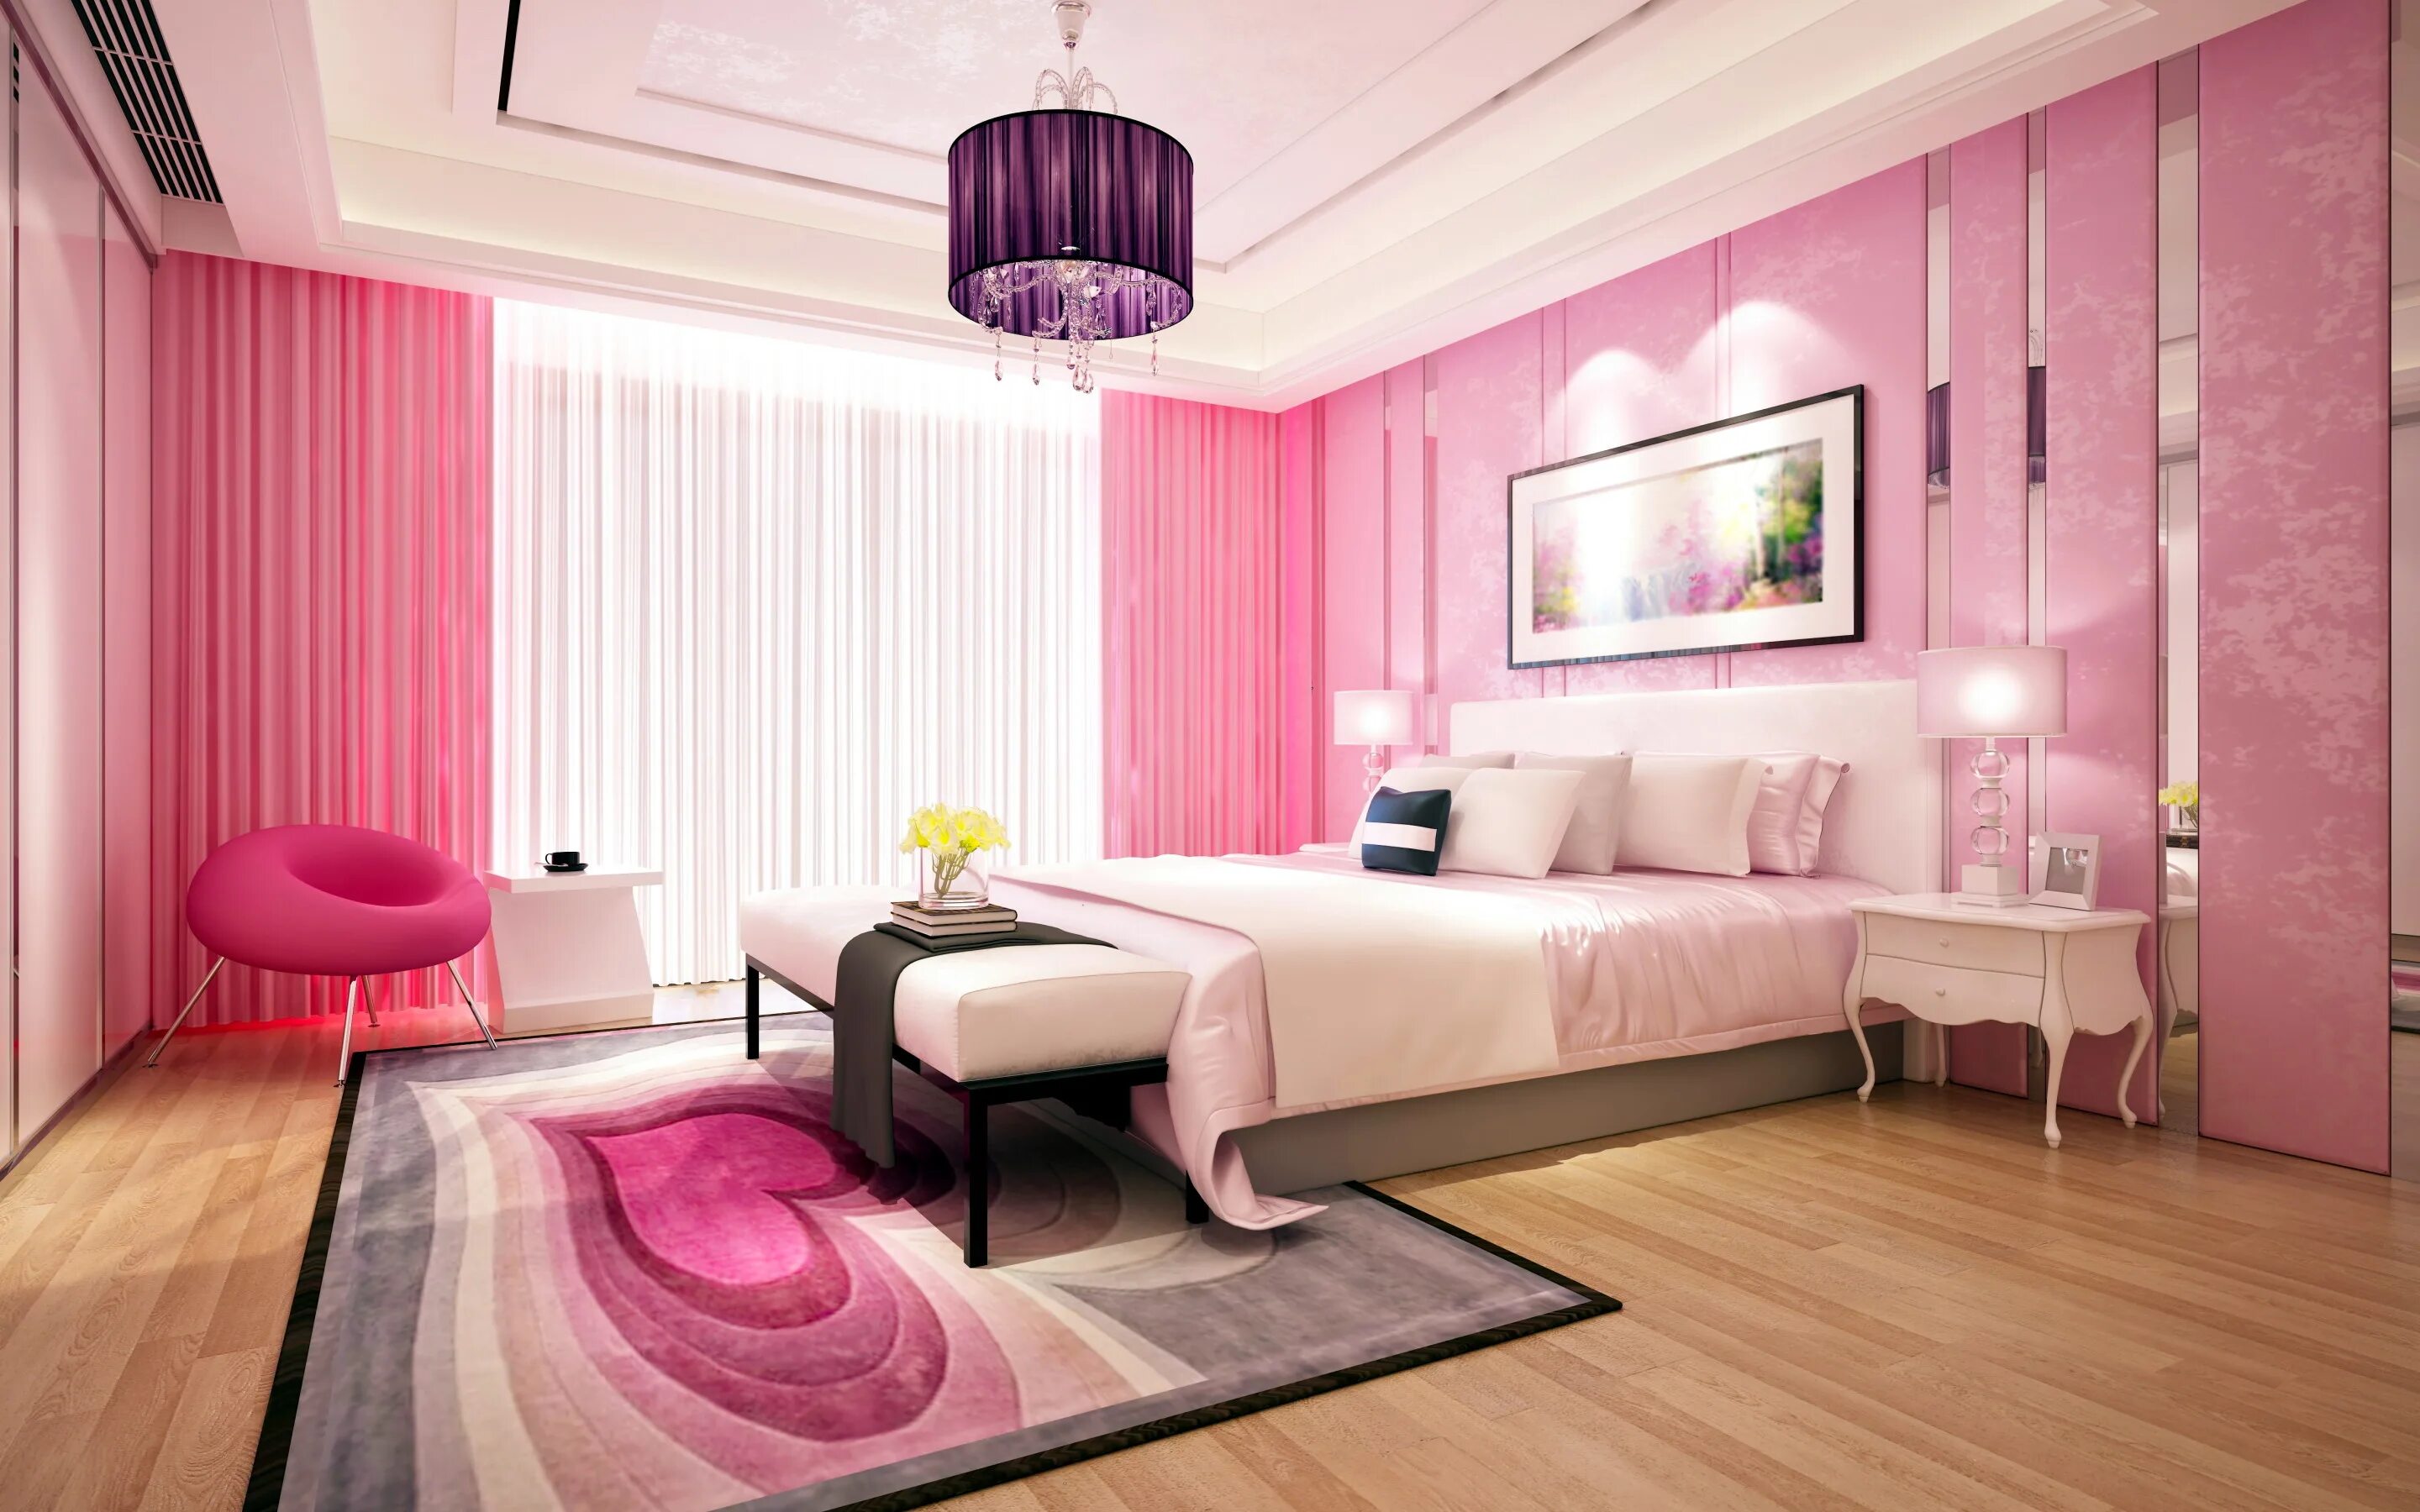 Комната в розовых тонах. Спальня в розовом цвете. Интерьер спальни в розовых тонах. Спальня в розовом стиле.